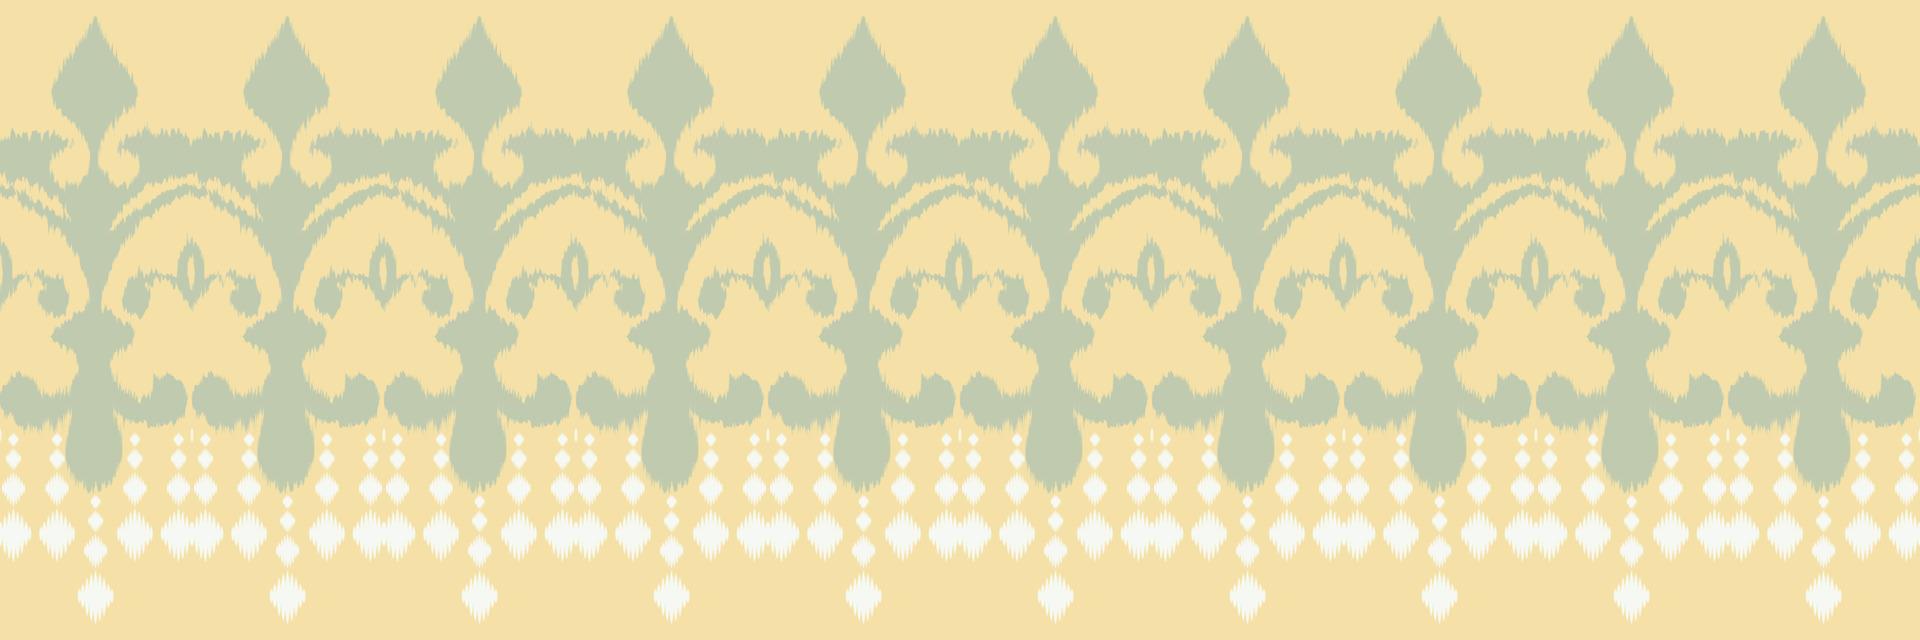 Stammes- abstraktes nahtloses Muster der Ikat-Grenze. ethnische geometrische ikkat batik digitaler vektor textildesign für drucke stoff saree mughal pinsel symbol schwaden textur kurti kurtis kurtas